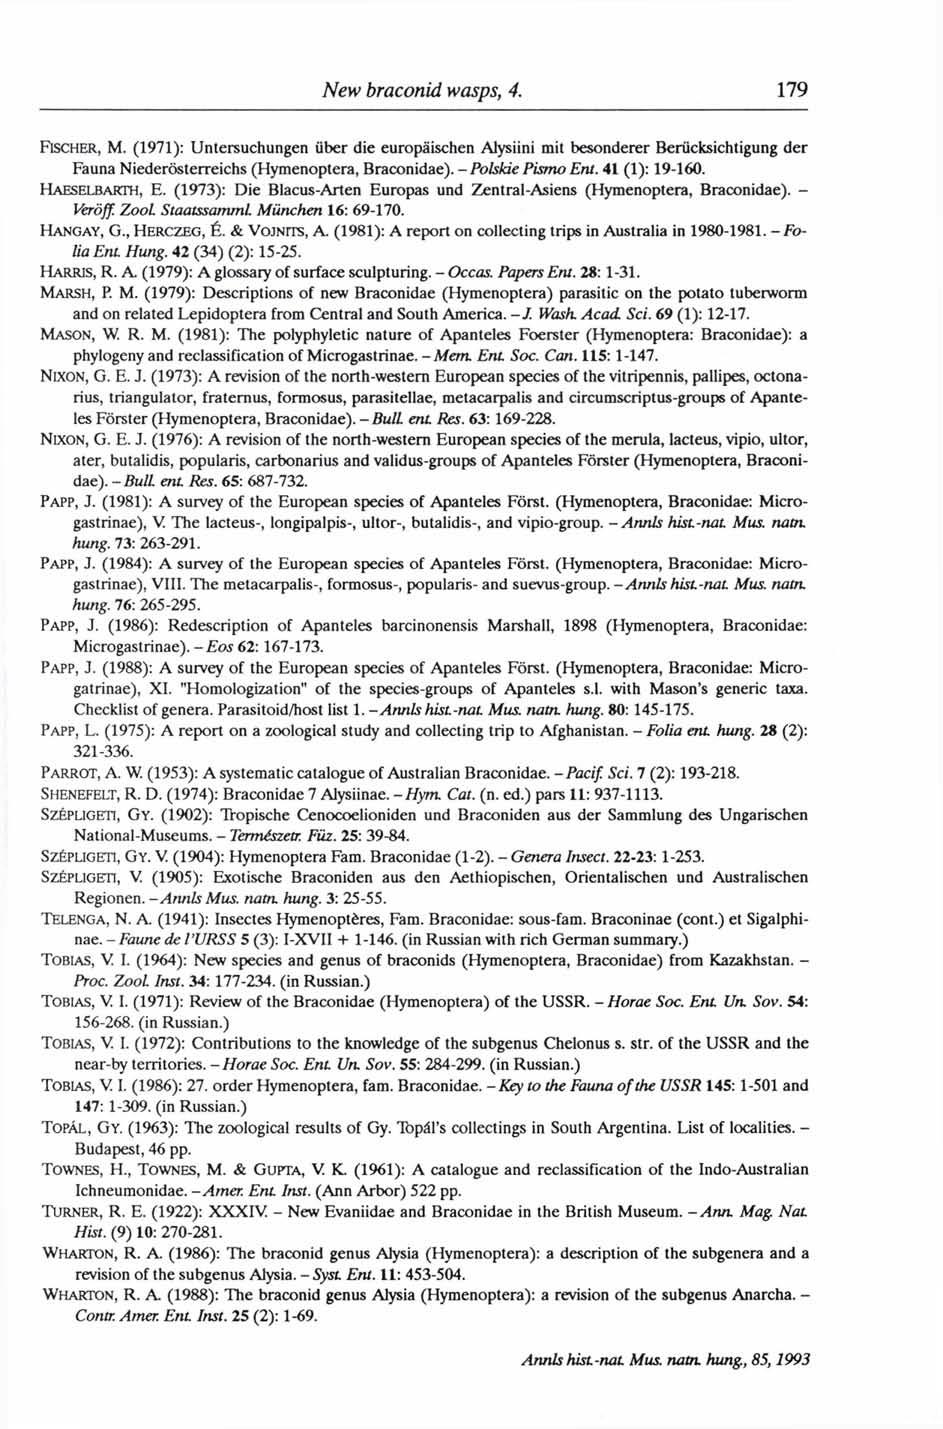 FISCHER, M. (1971): Untersuchungen über die europäischen Alysiini mit besonderer Berücksichtigung der Fauna Niederösterreichs (Hymenoptera, Braconidae). - Polskié Pismo Ent. 41 (1): 19-160.